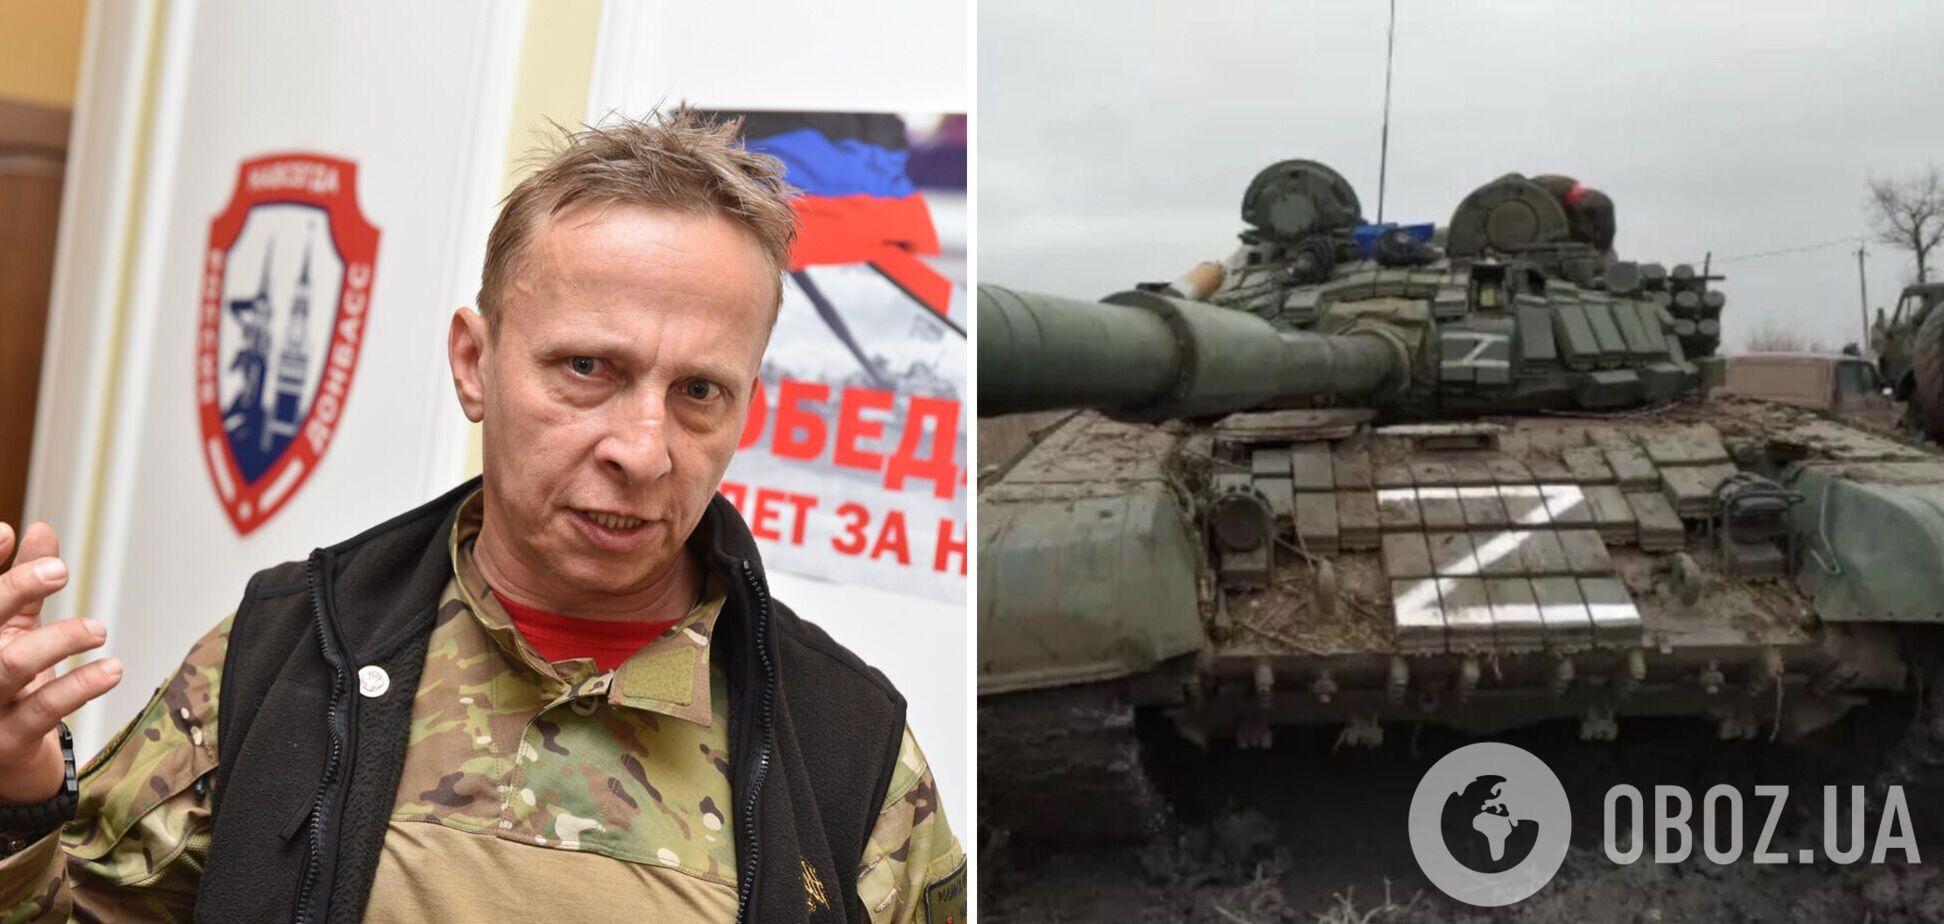 Іван Охлобистін потрапив під обстріл і 'спіймав кулю' на окупованому Донбасі